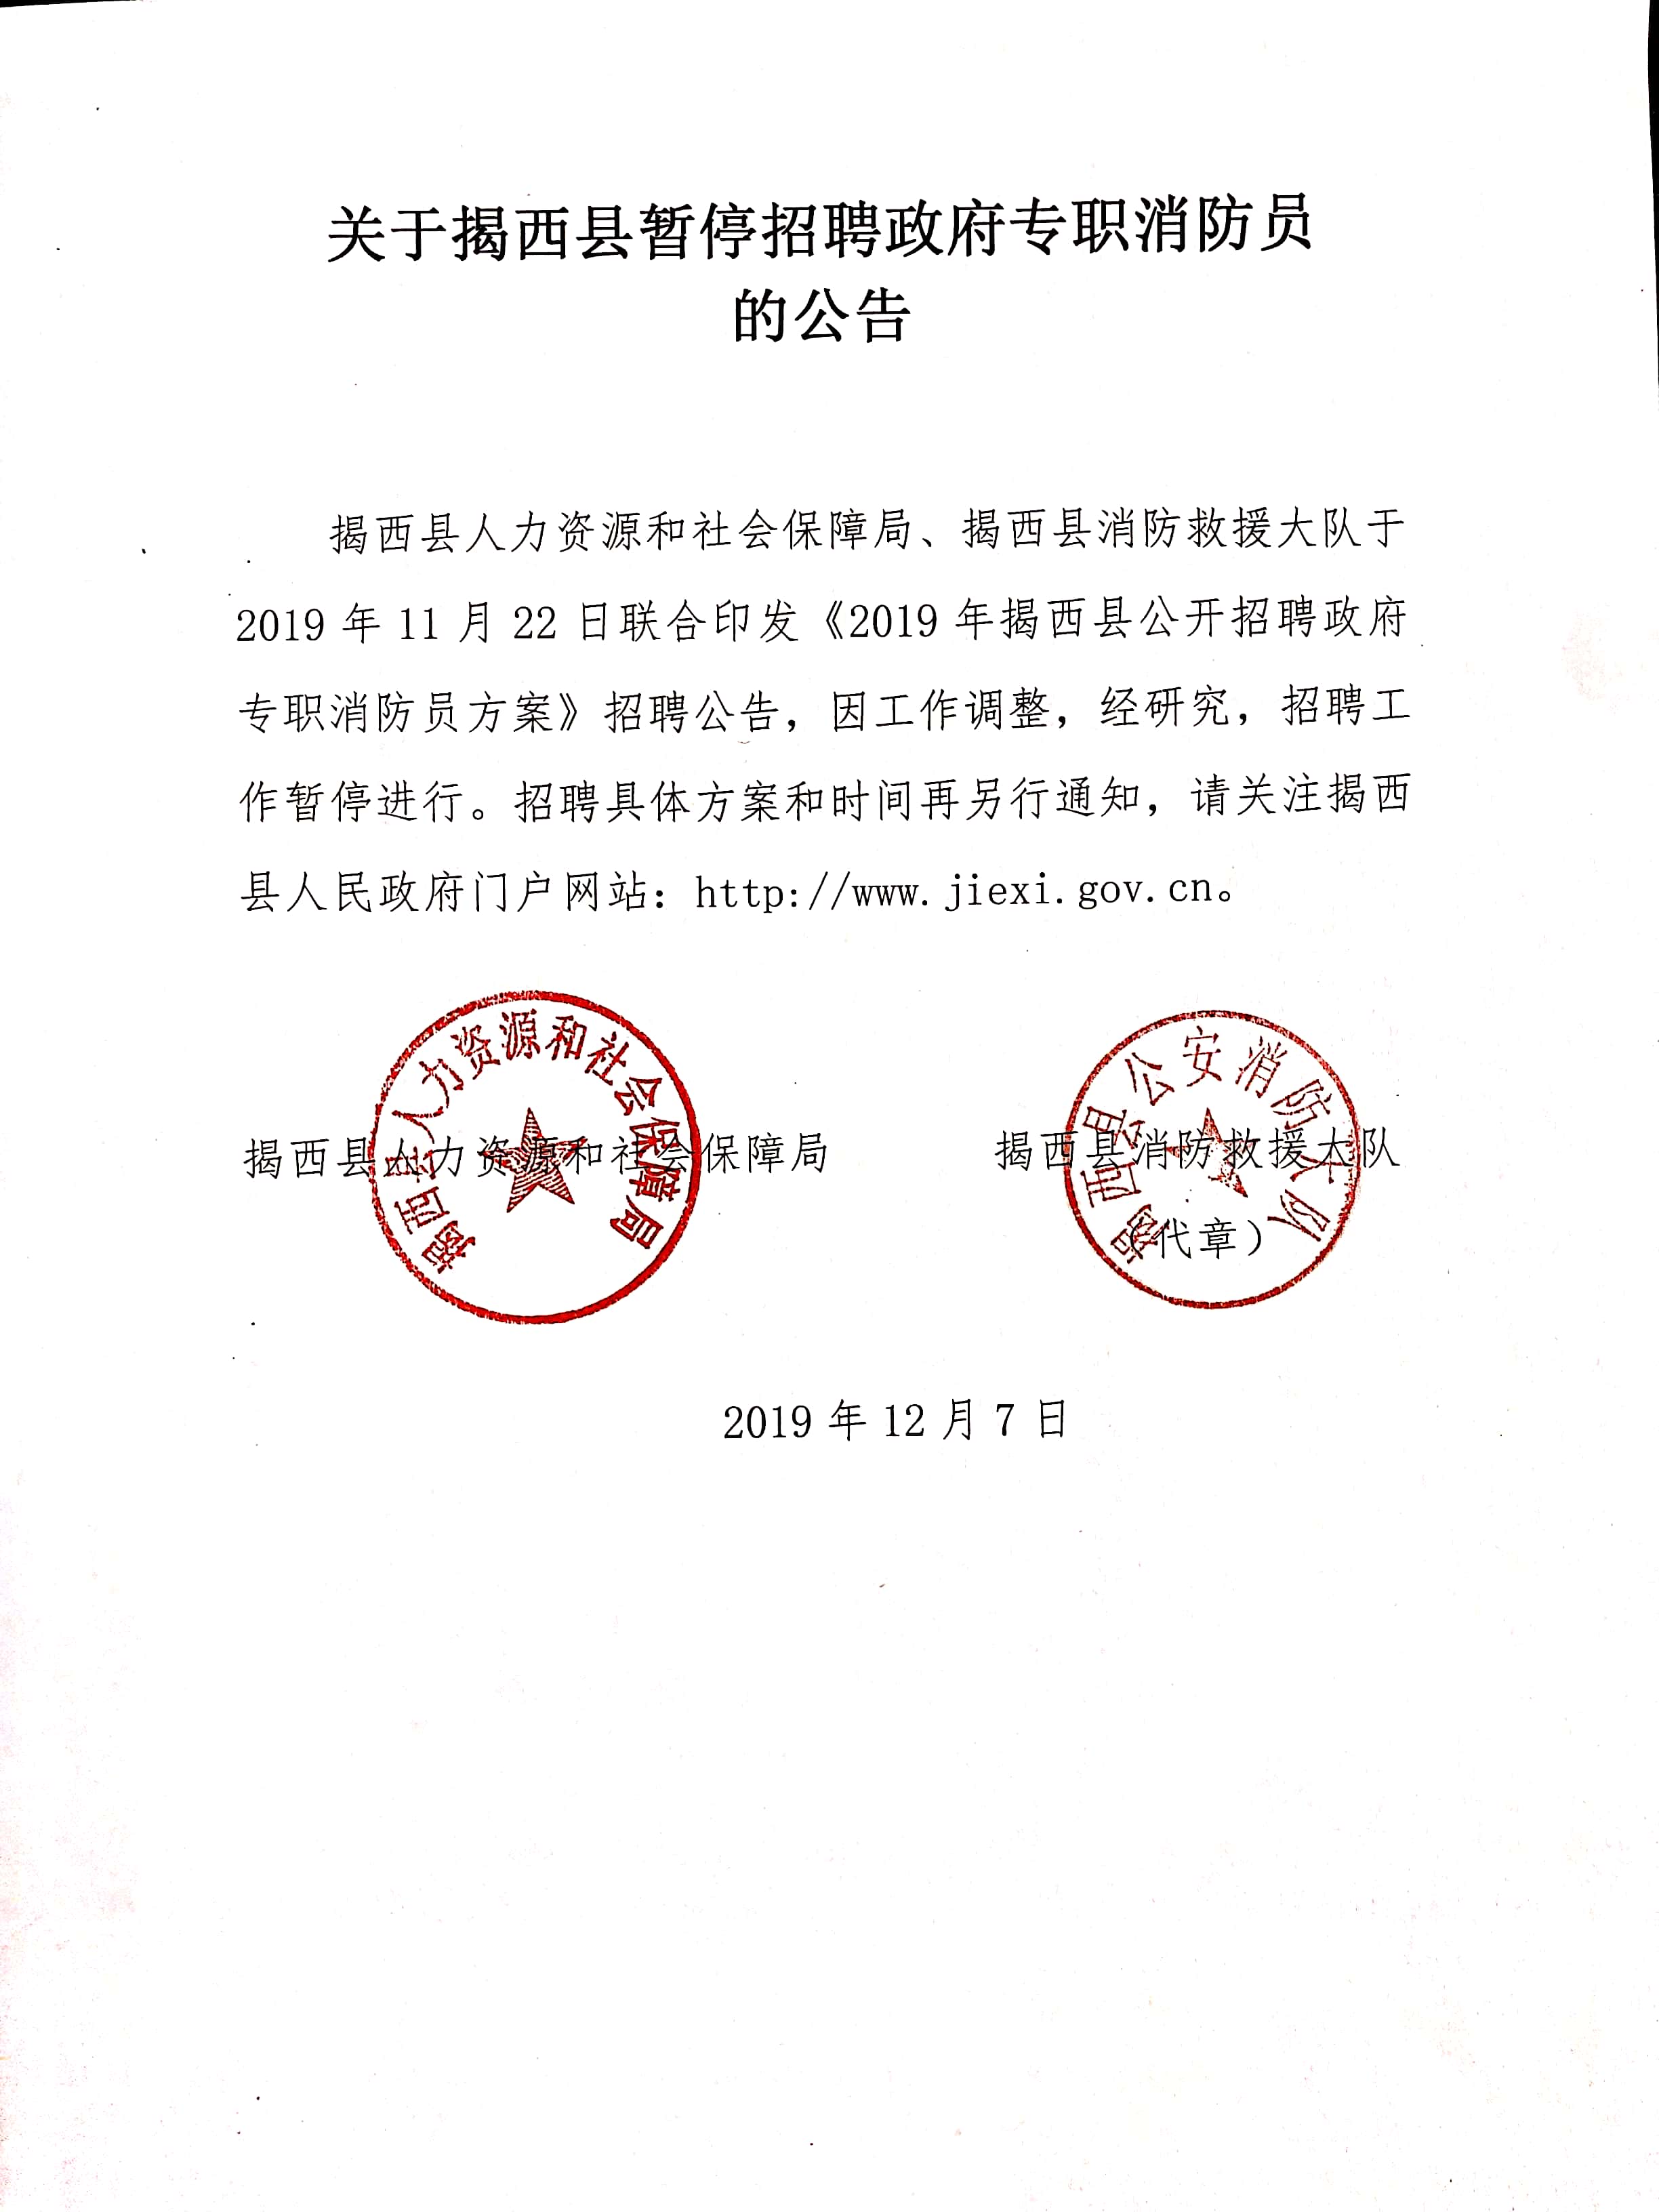 关于揭西县暂停招聘政府专职消防员的公告.jpg